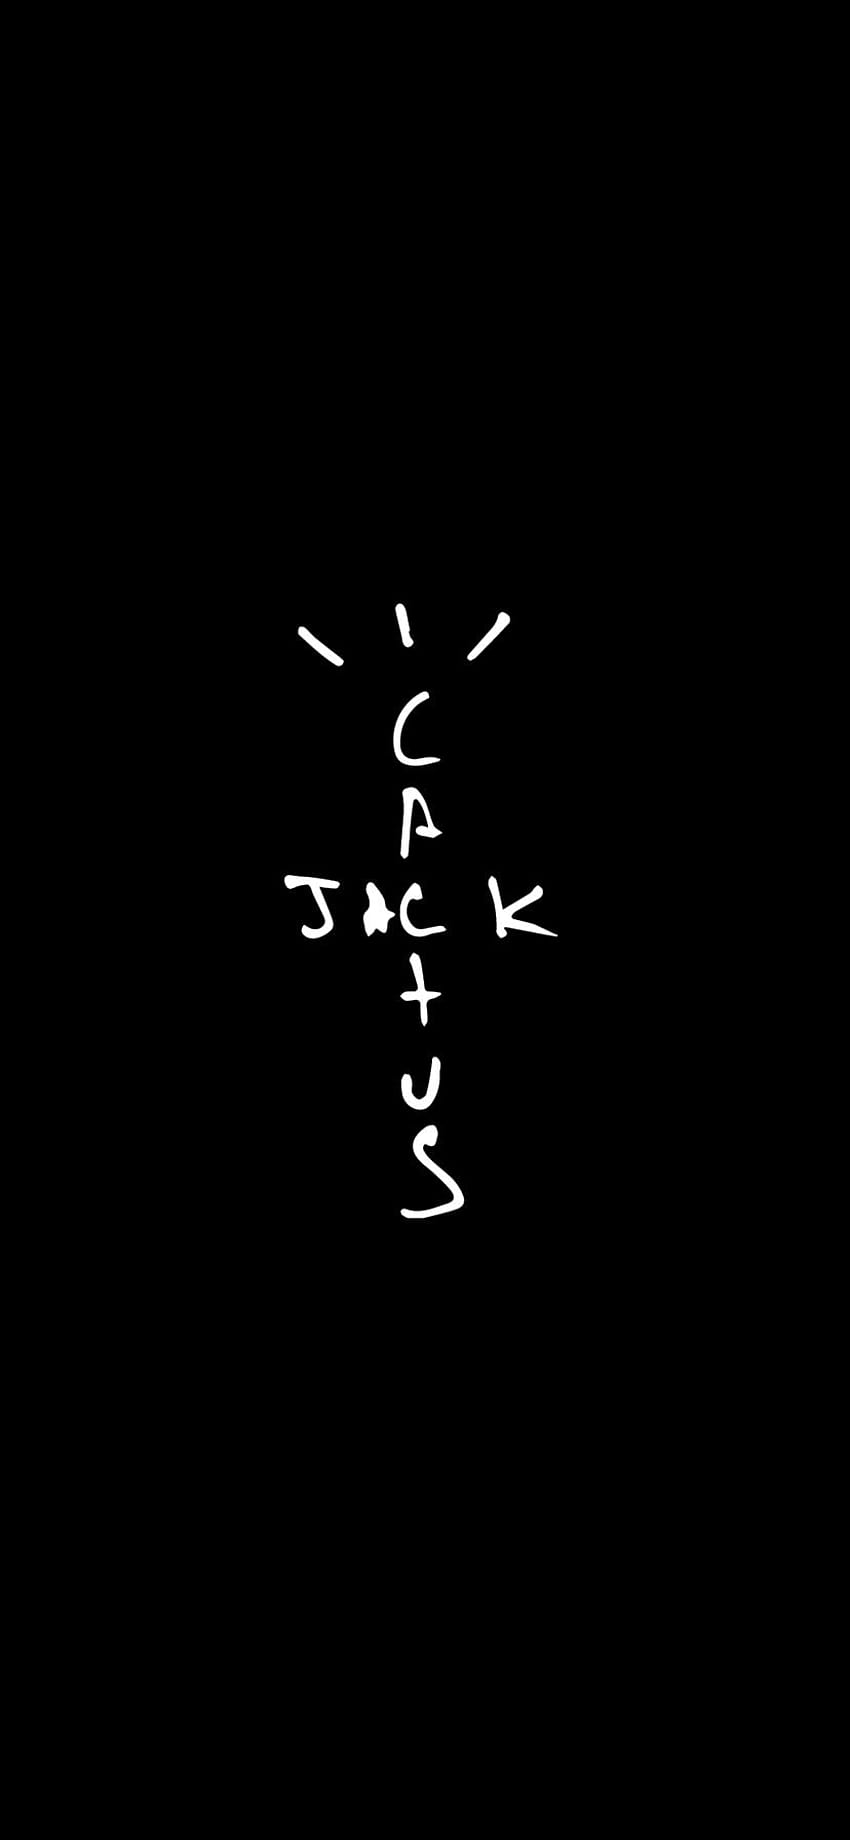 Dasar Cactus Jack iPhone, jack kaktus travis scott x air jordan 1 wallpaper ponsel HD